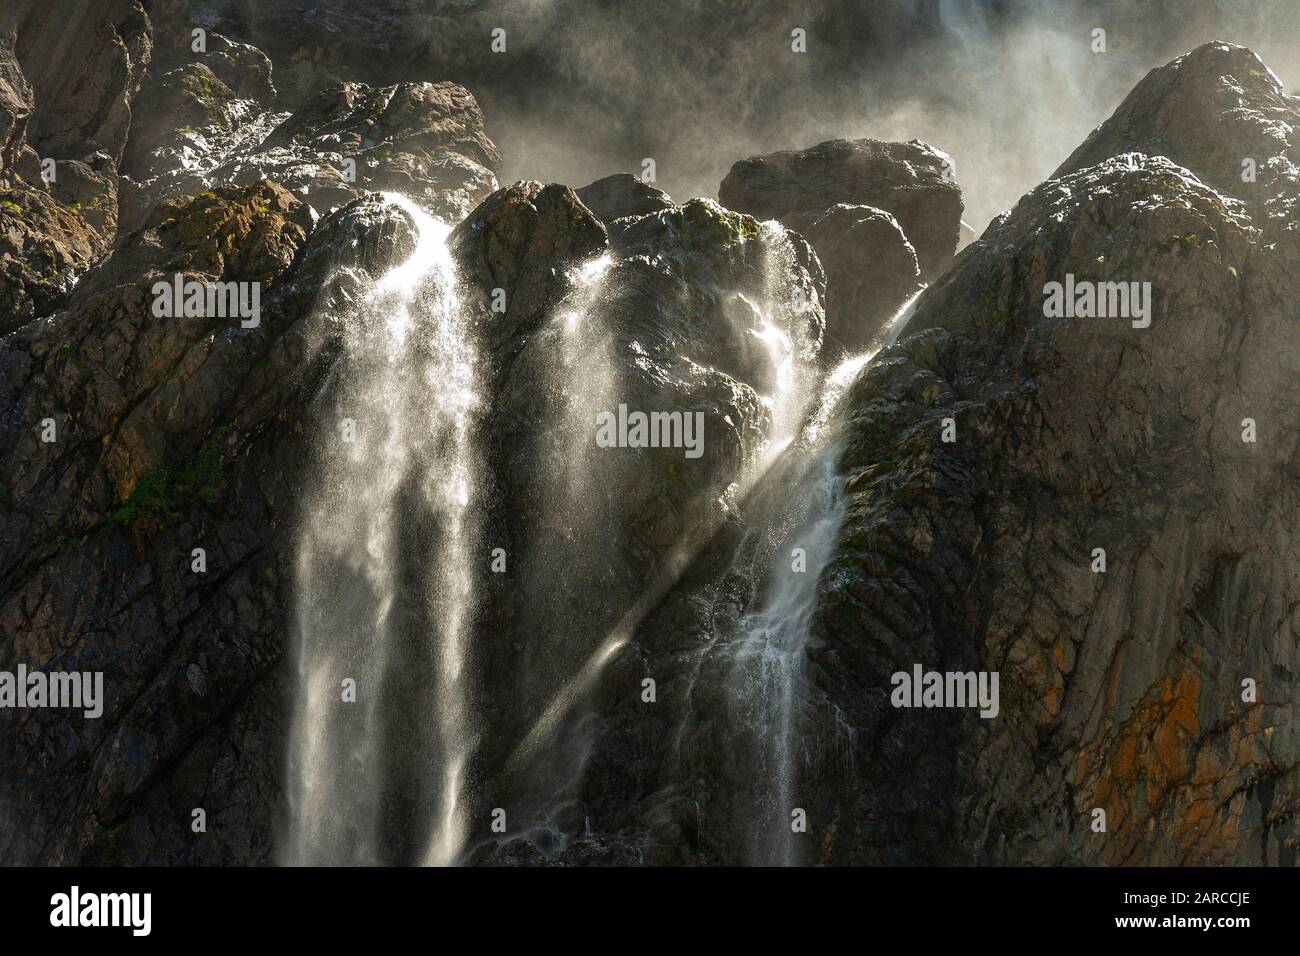 Waterfall, Circus of Gavarnie, Upper Pyrenees Stock Photo